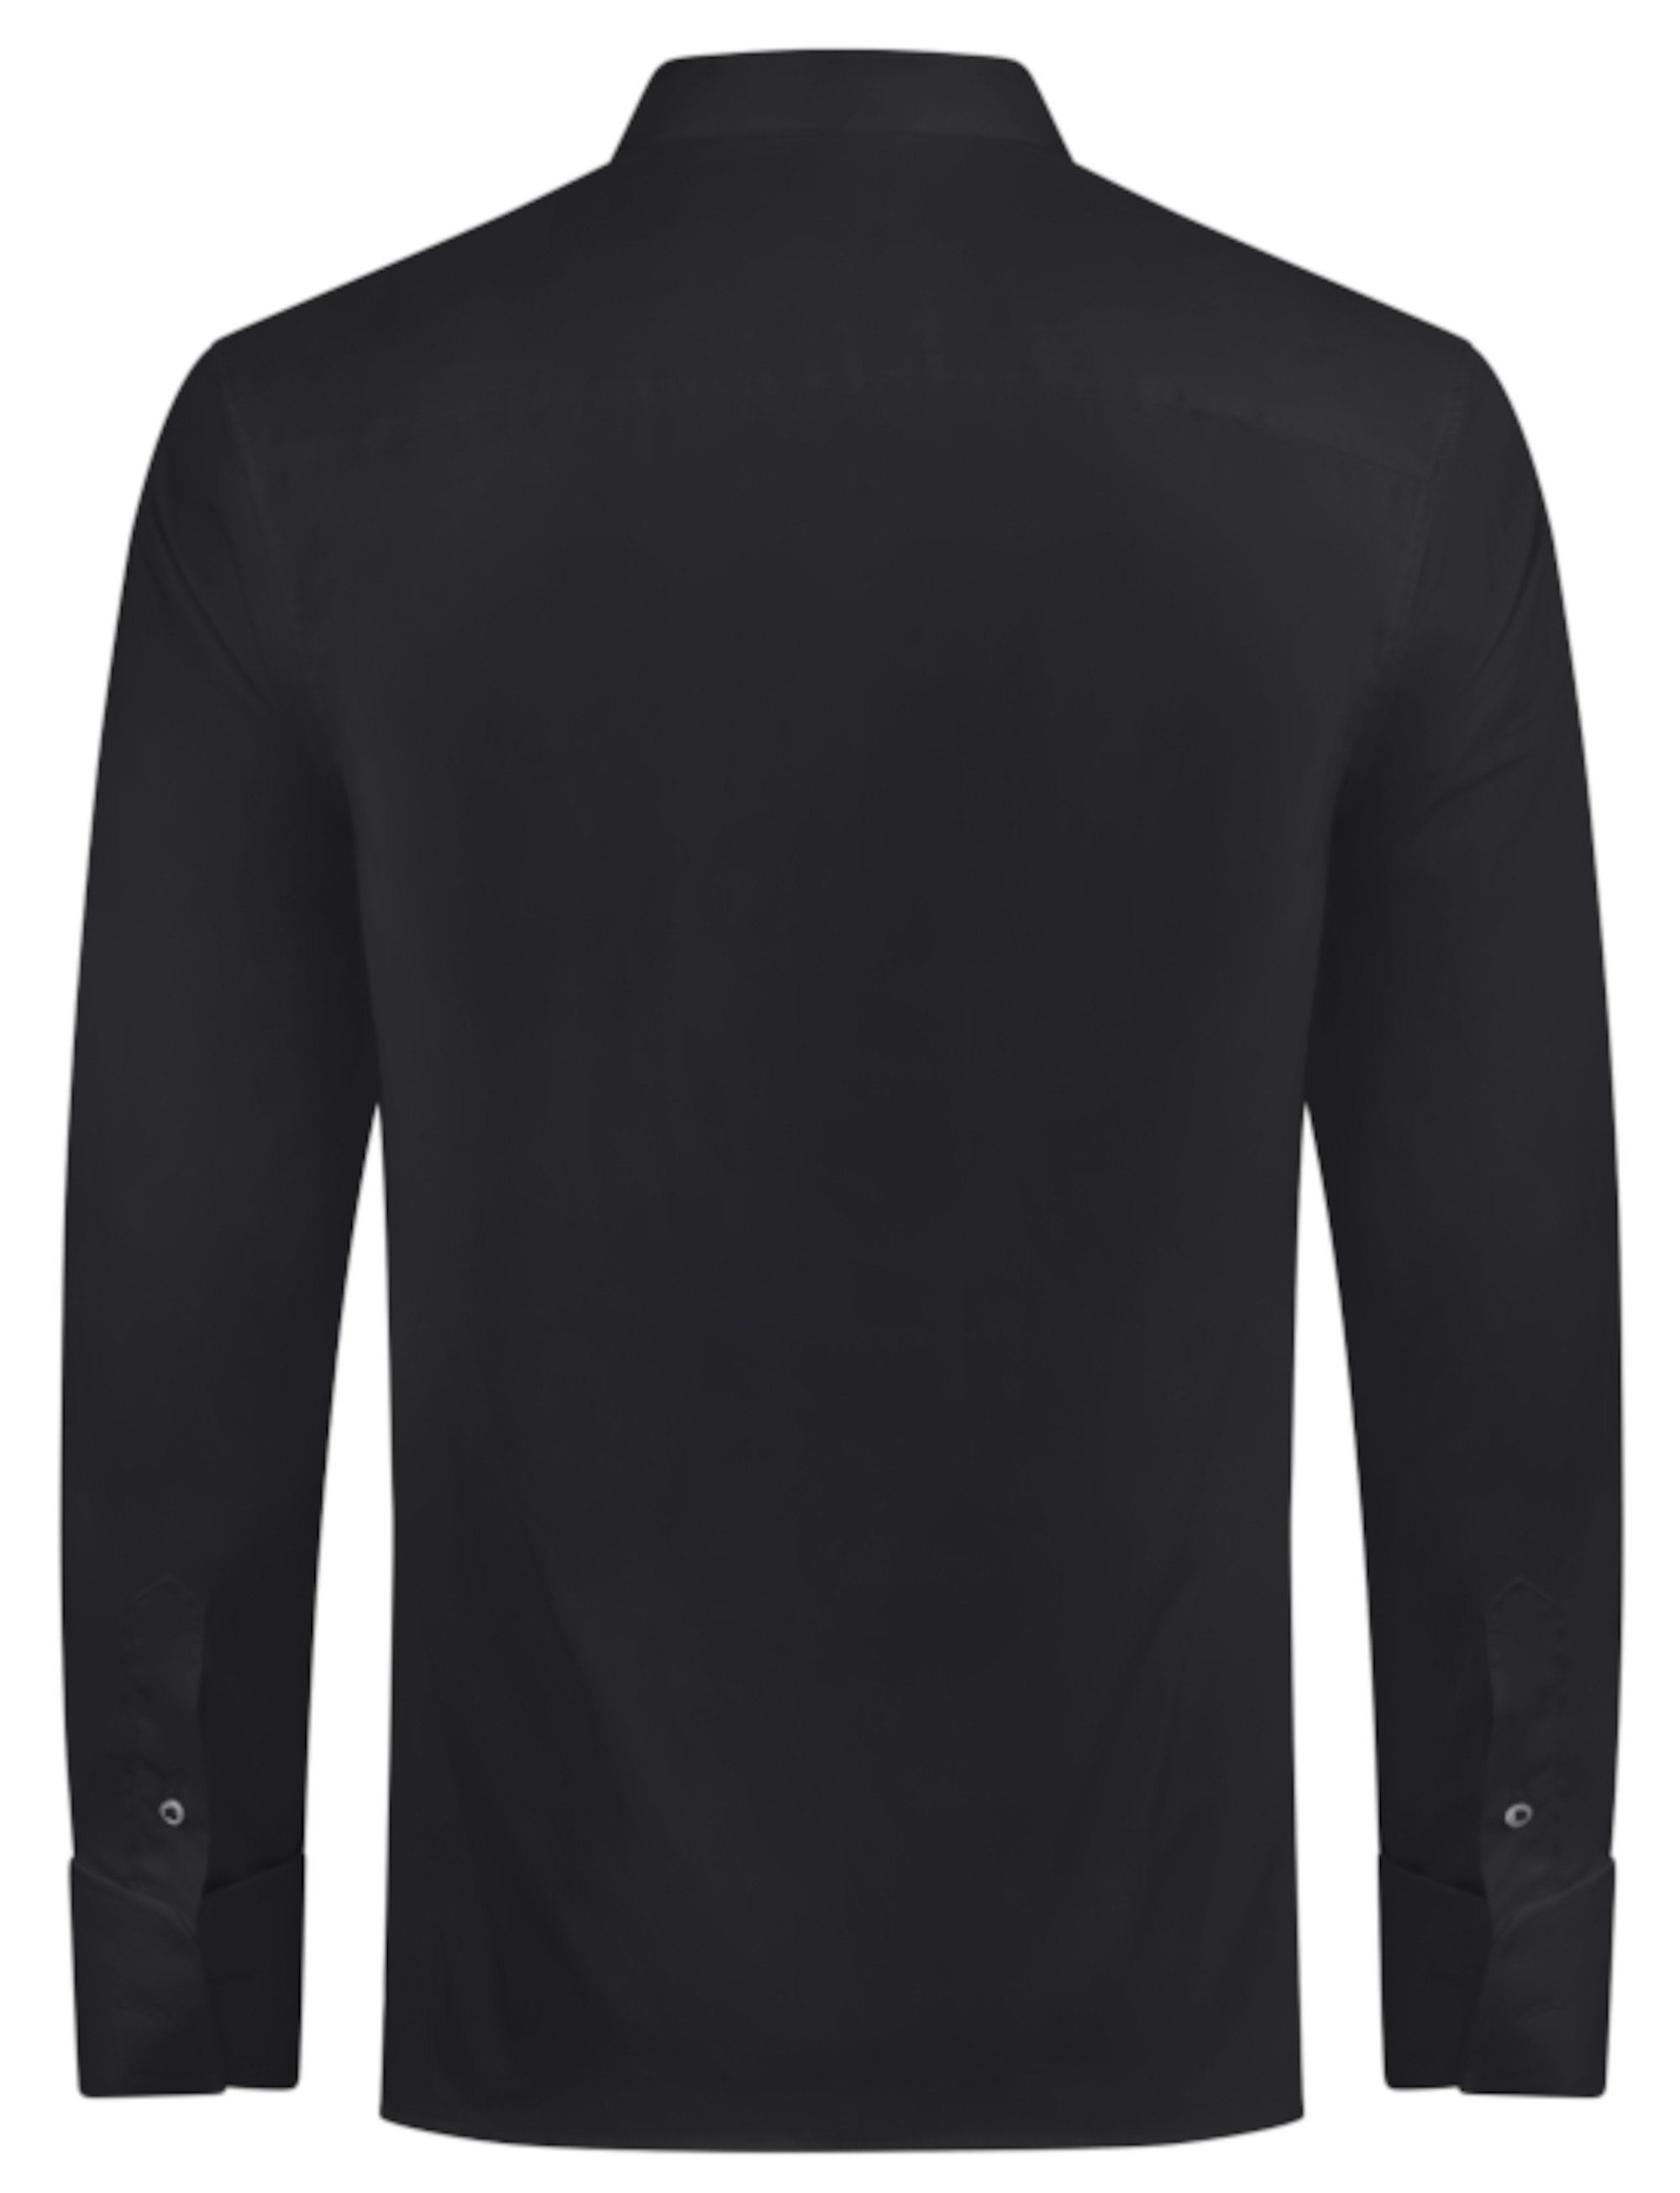 Huber schwarz Fit Plissee, Regular HU-0171 Kläppchen-Kragen, Umschlag-Manschette, Hemden Smokinghemd